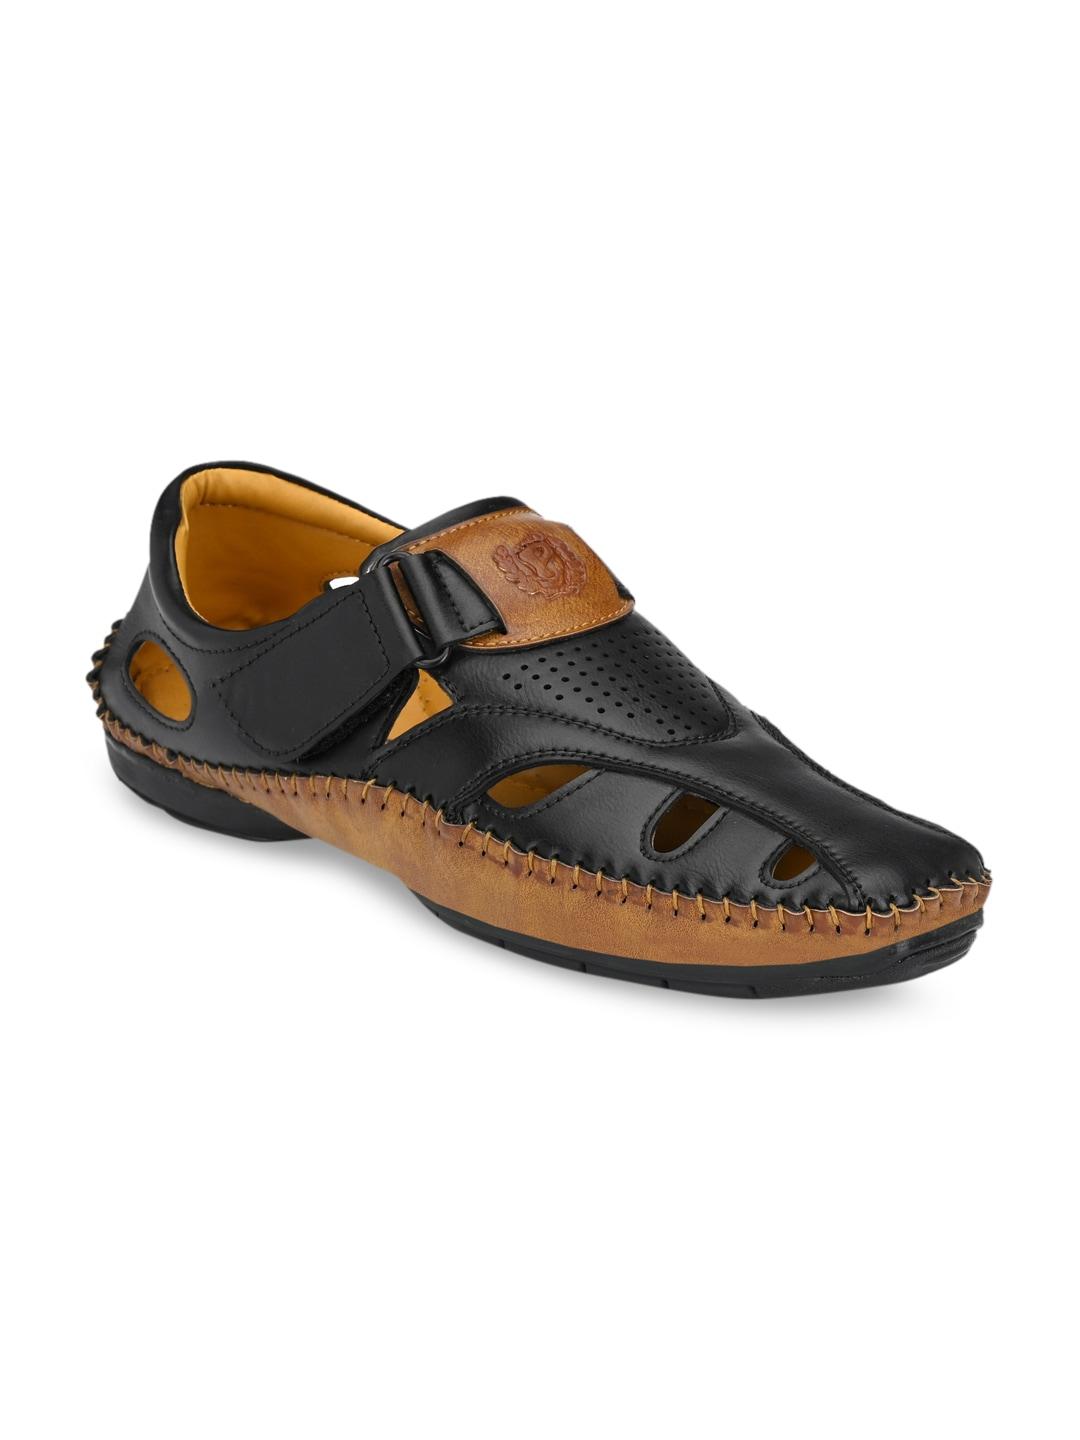 prolific men black & beige shoe-style sandals